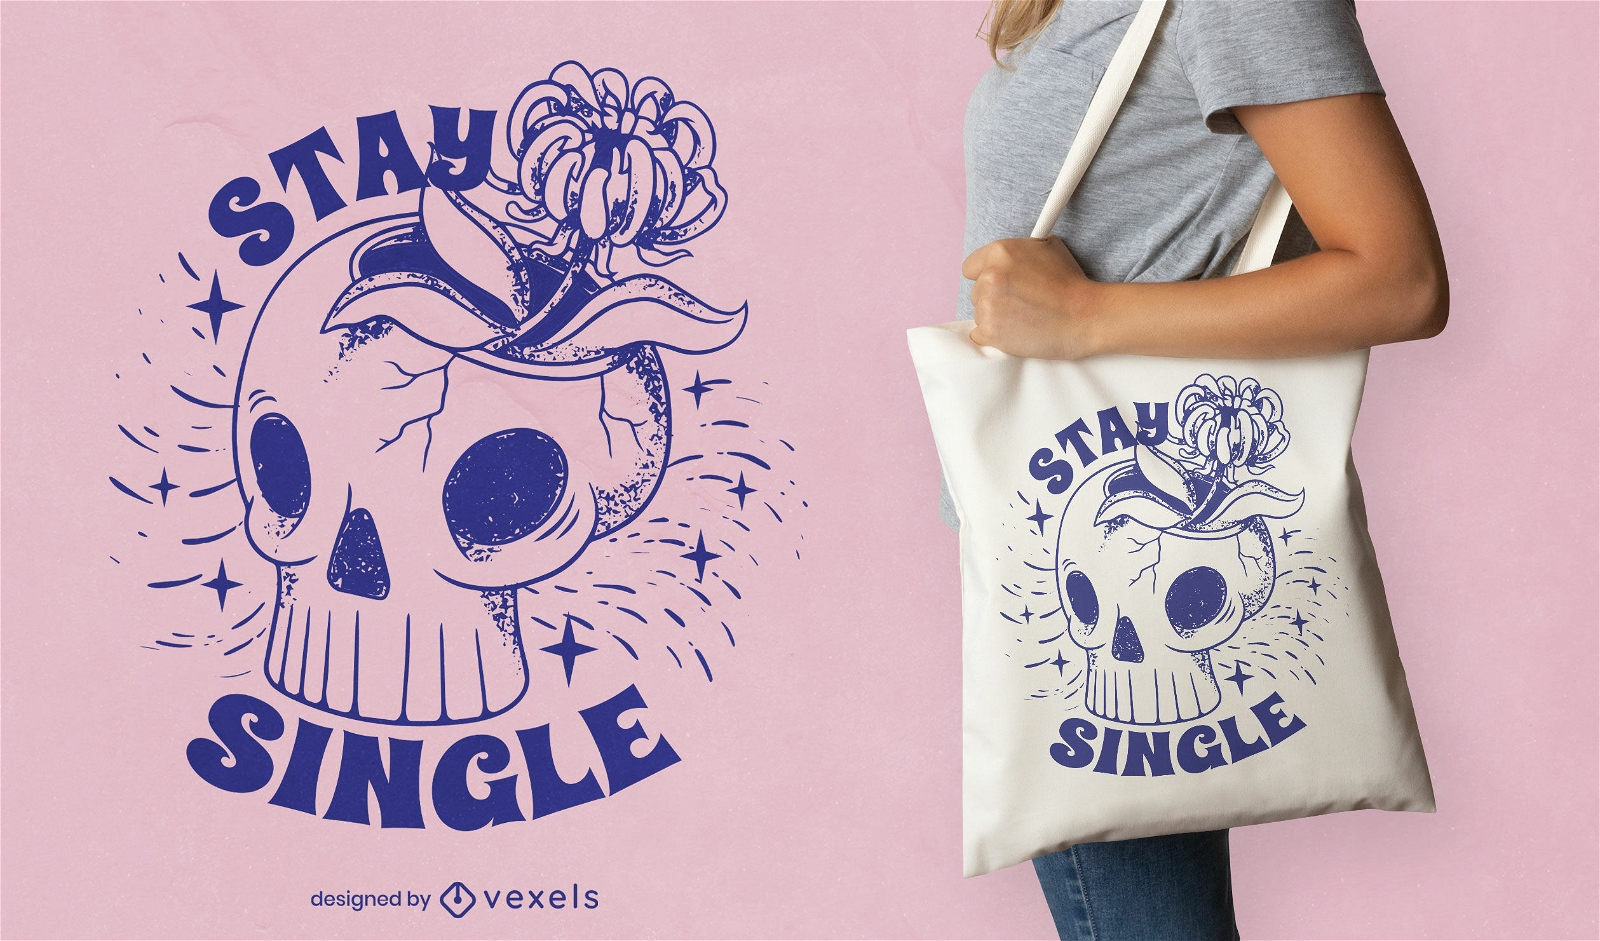 Stay single skull tote bag design